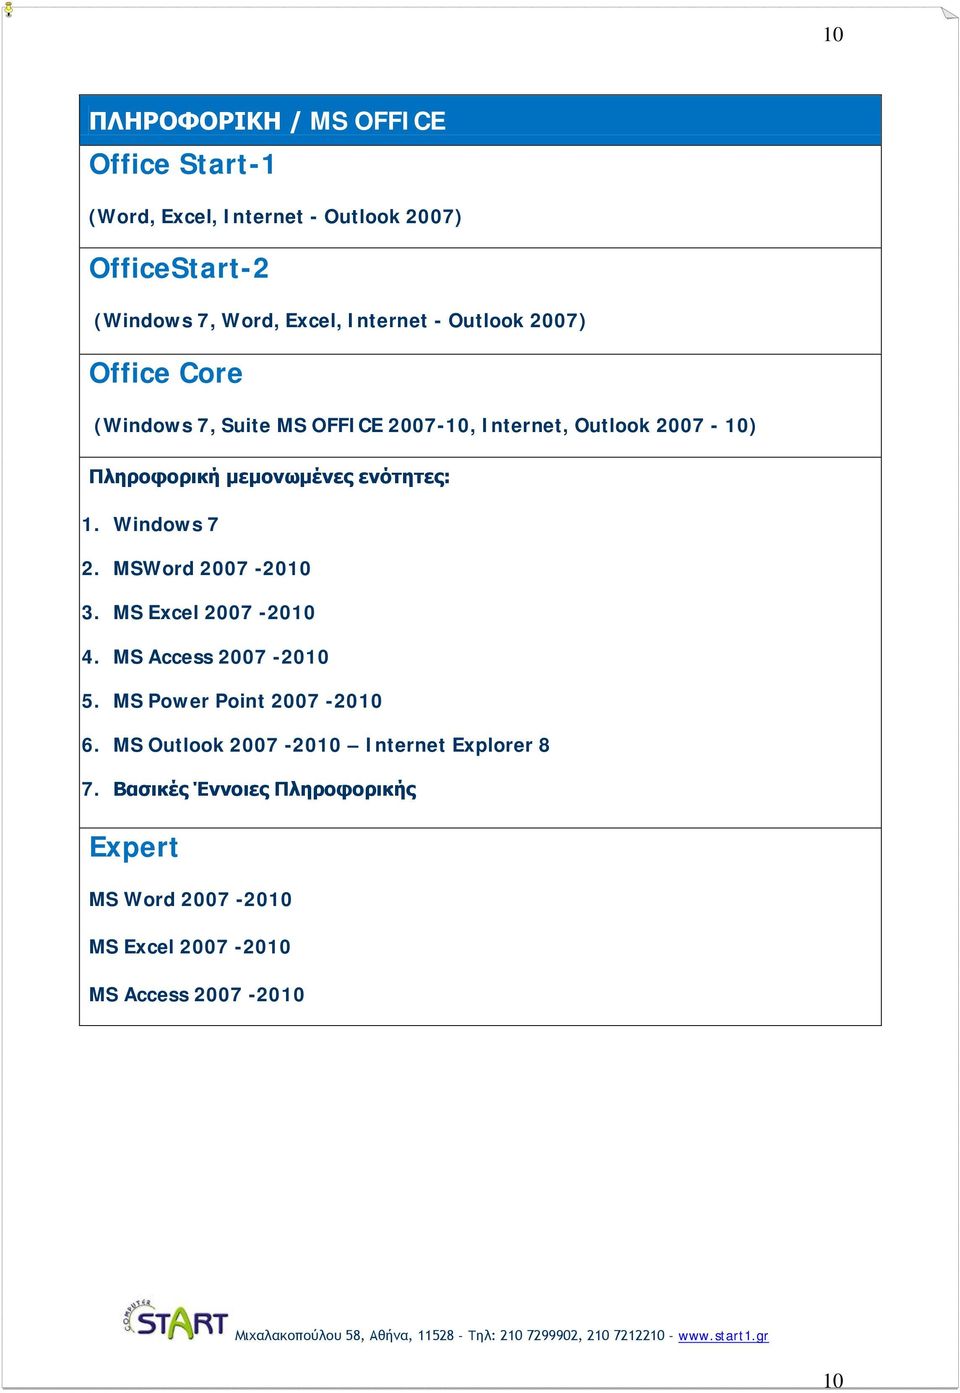 ενότητες: 1. Windows 7 2. MSWord 2007-2010 3. MS Excel 2007-2010 4. MS Access 2007-2010 5. MS Power Point 2007-2010 6.